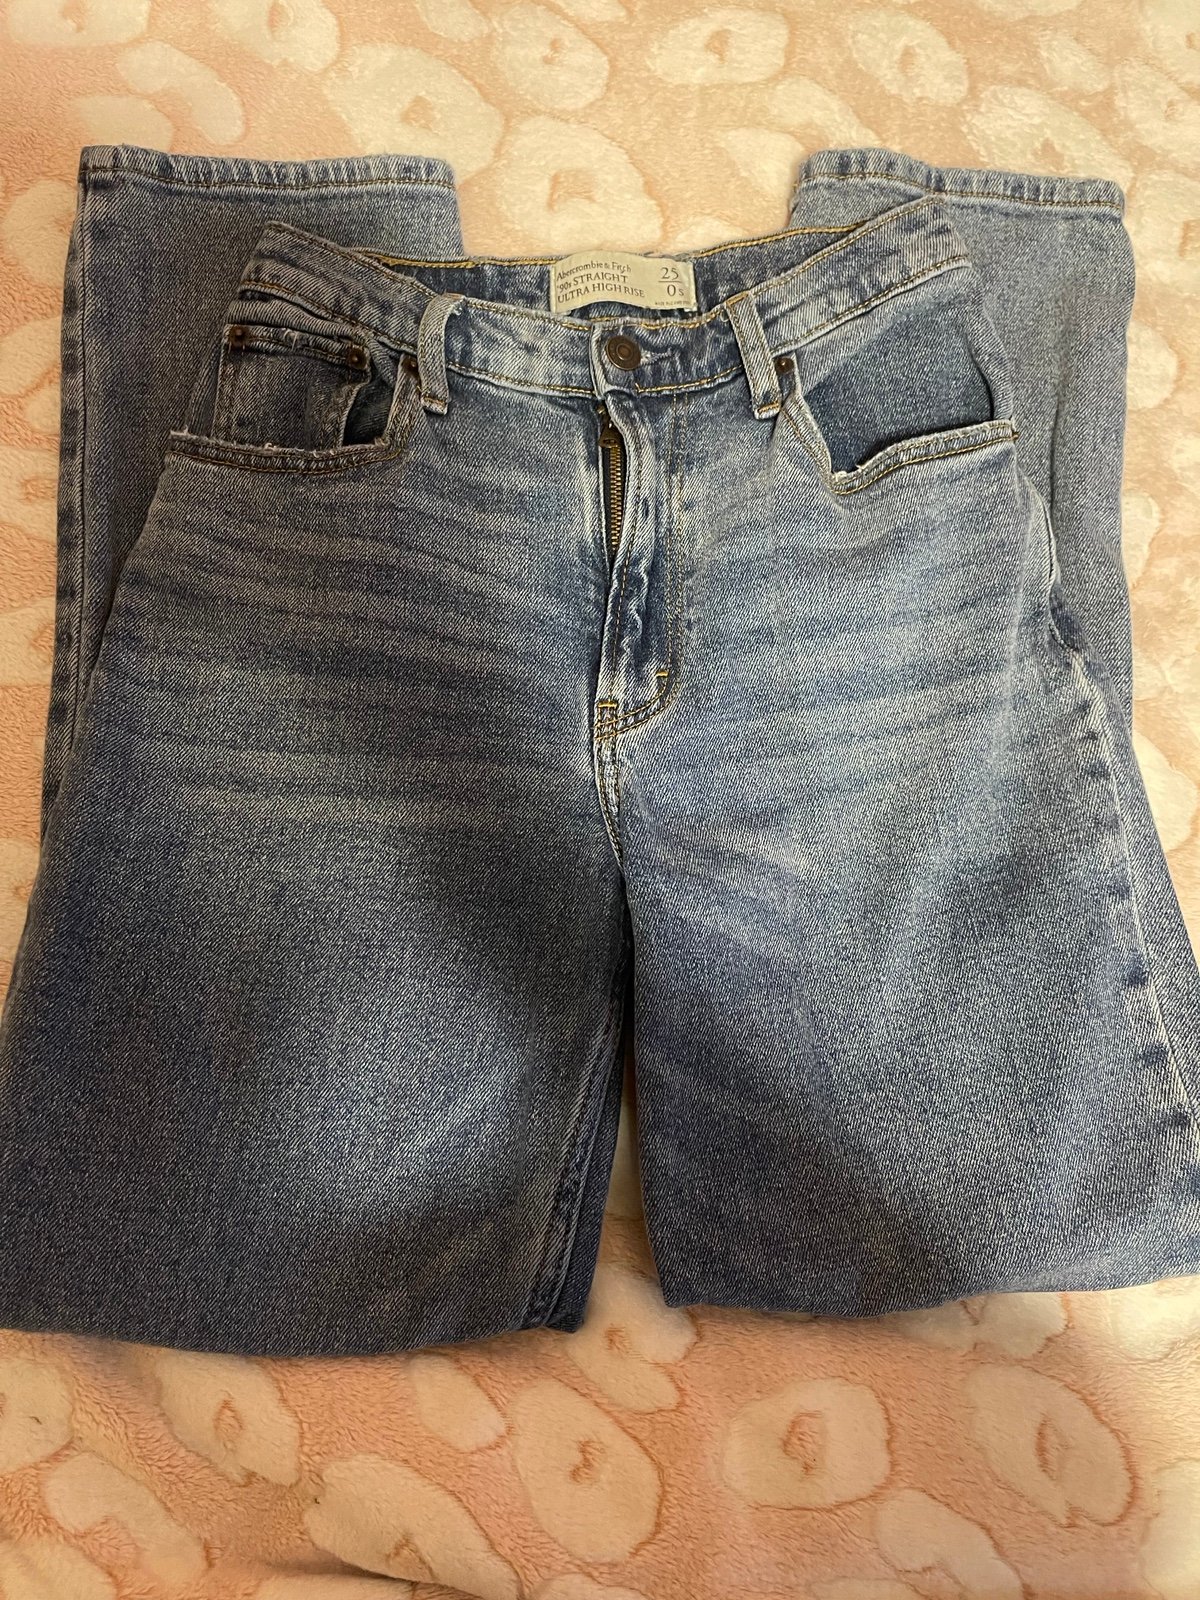 Classic abercrombie jeans jk1q5NJSt for sale